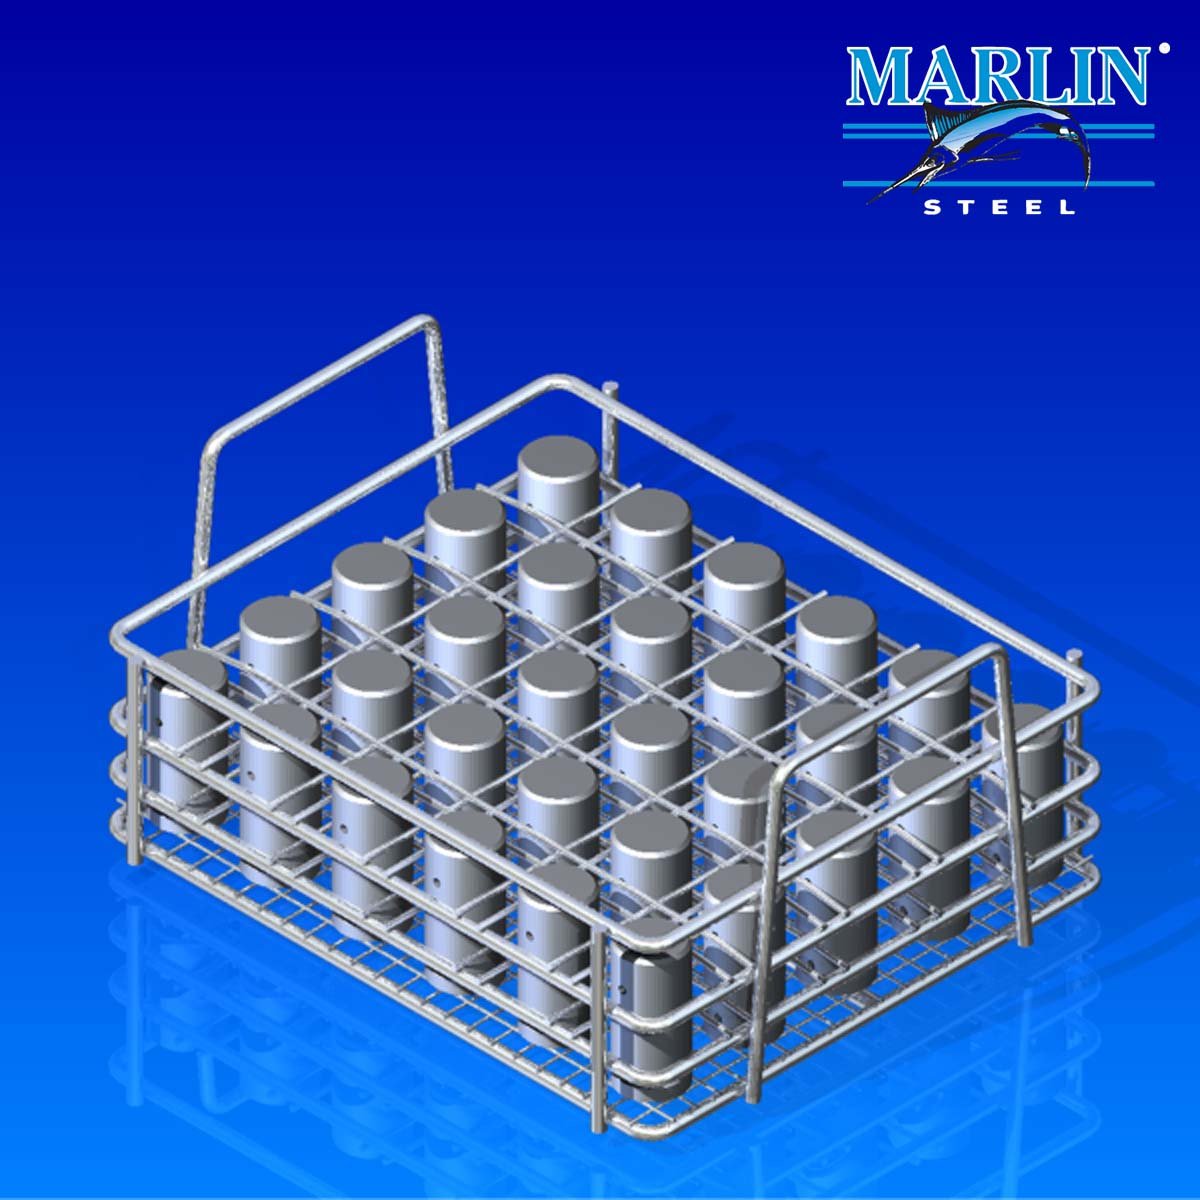 Marlin Steel Wire Material Handling Basket 837001